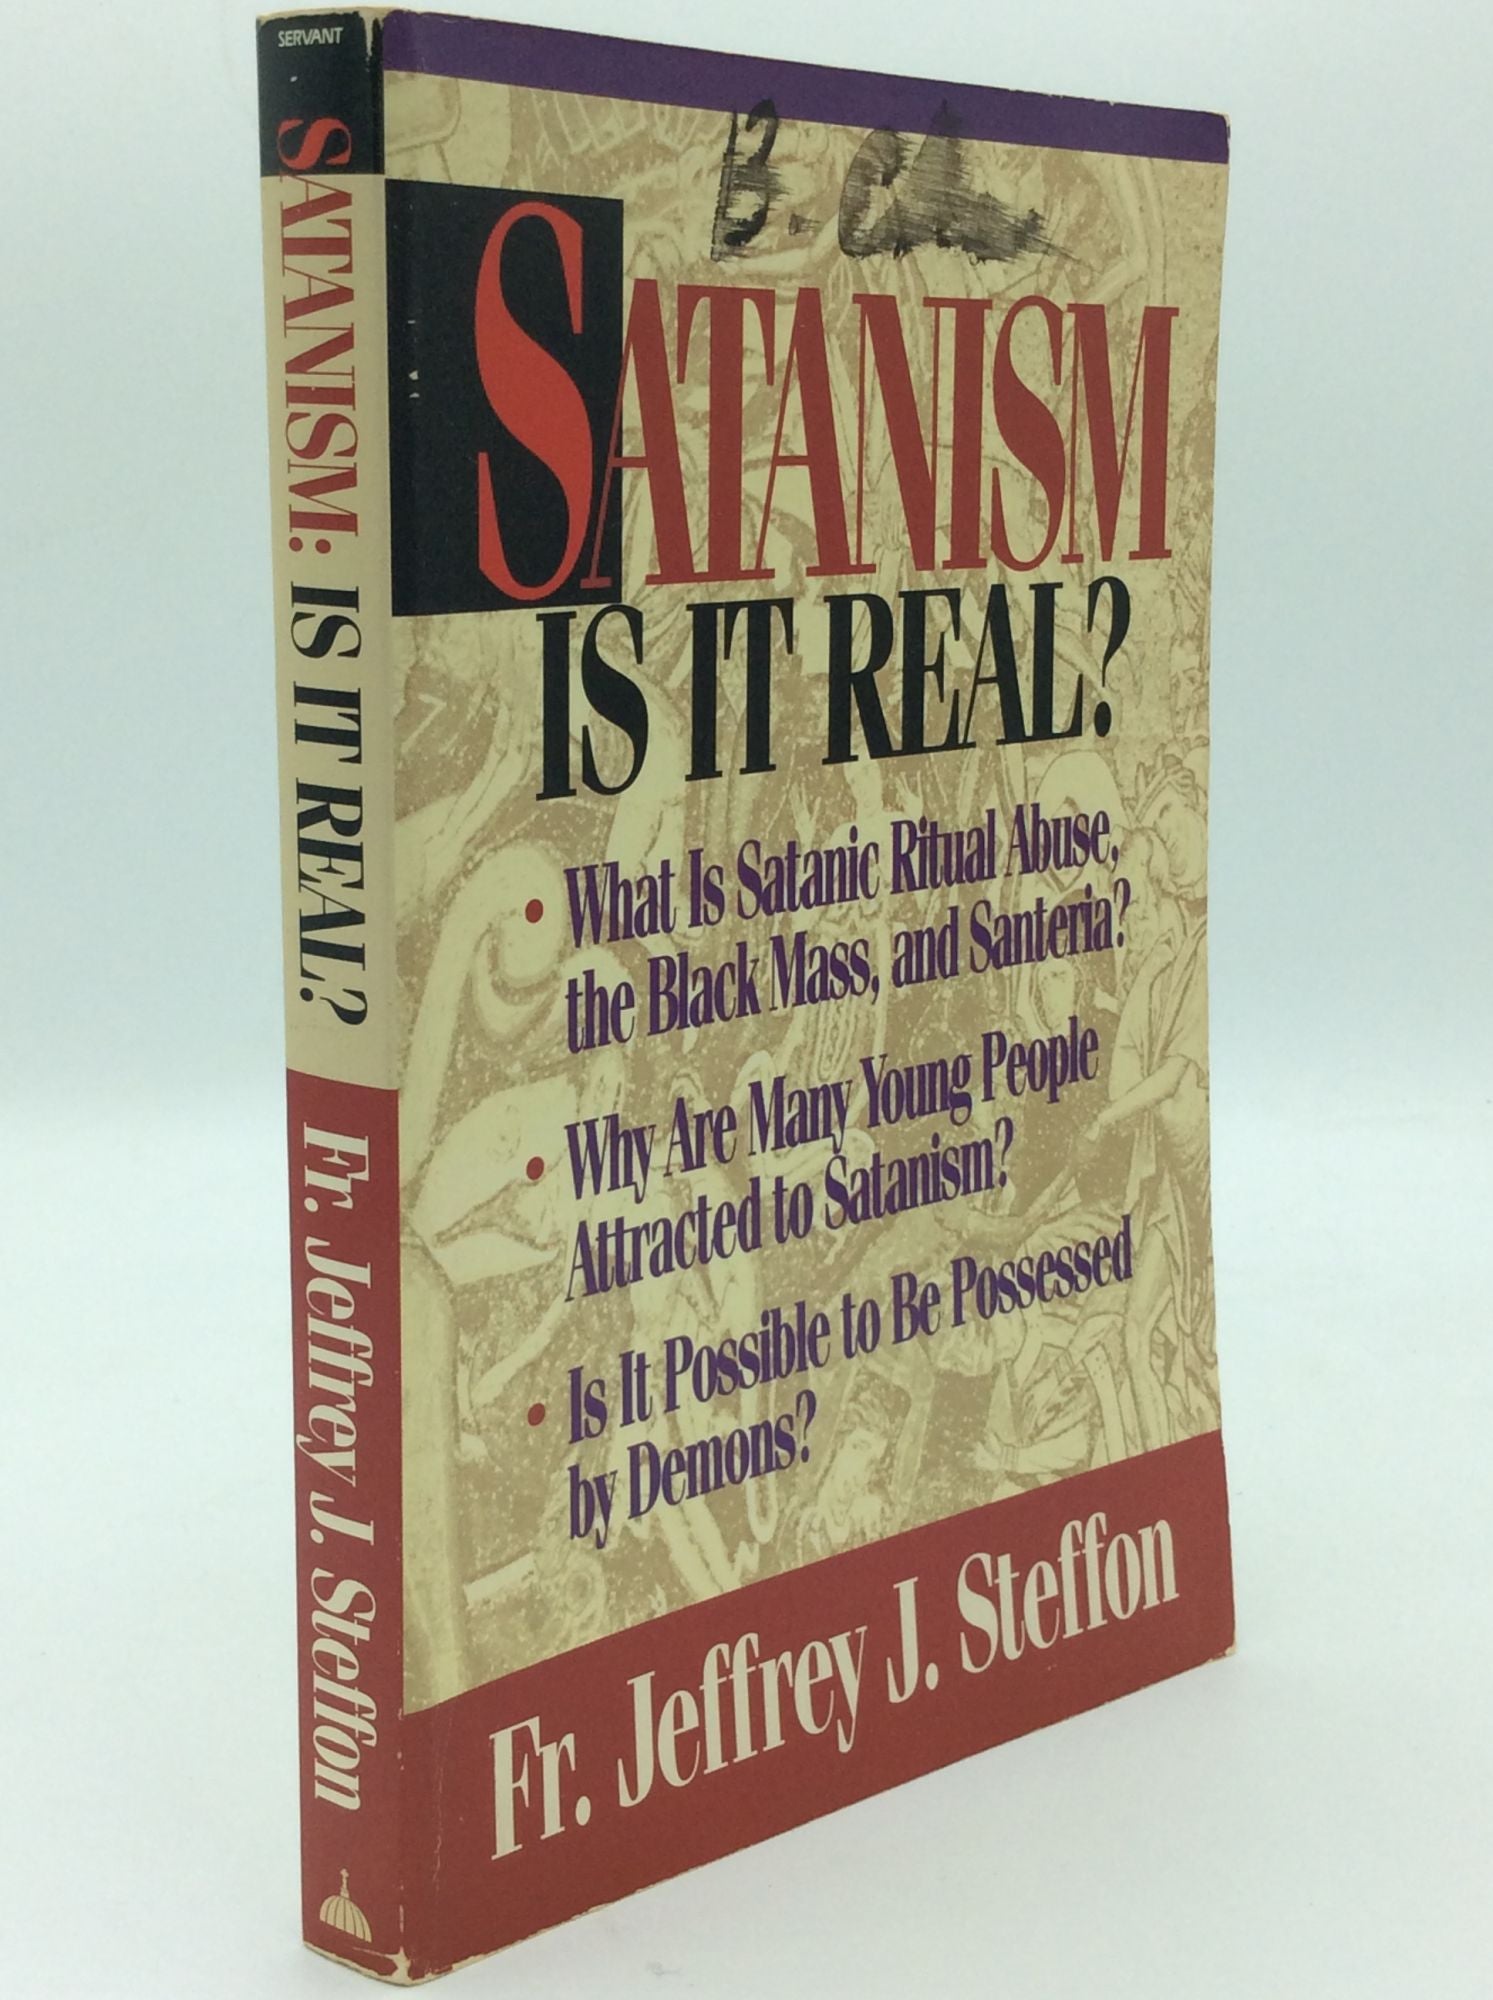 Fr. Jeffrey J. Steffon - Satanism: Is It Real